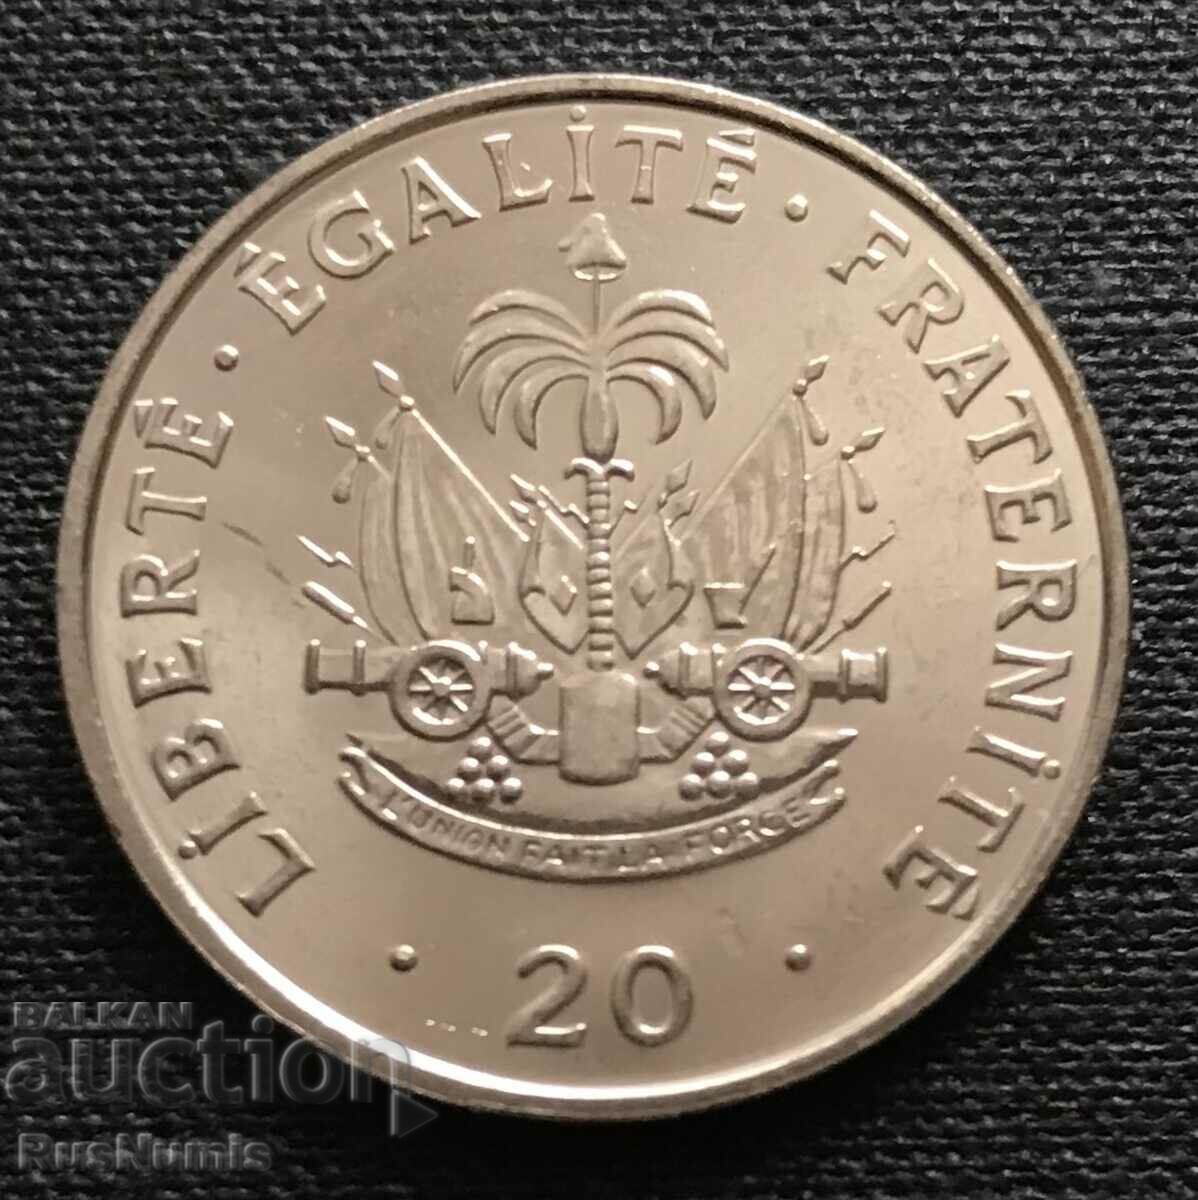 Haiti. 20 centimes 1995 UNC.